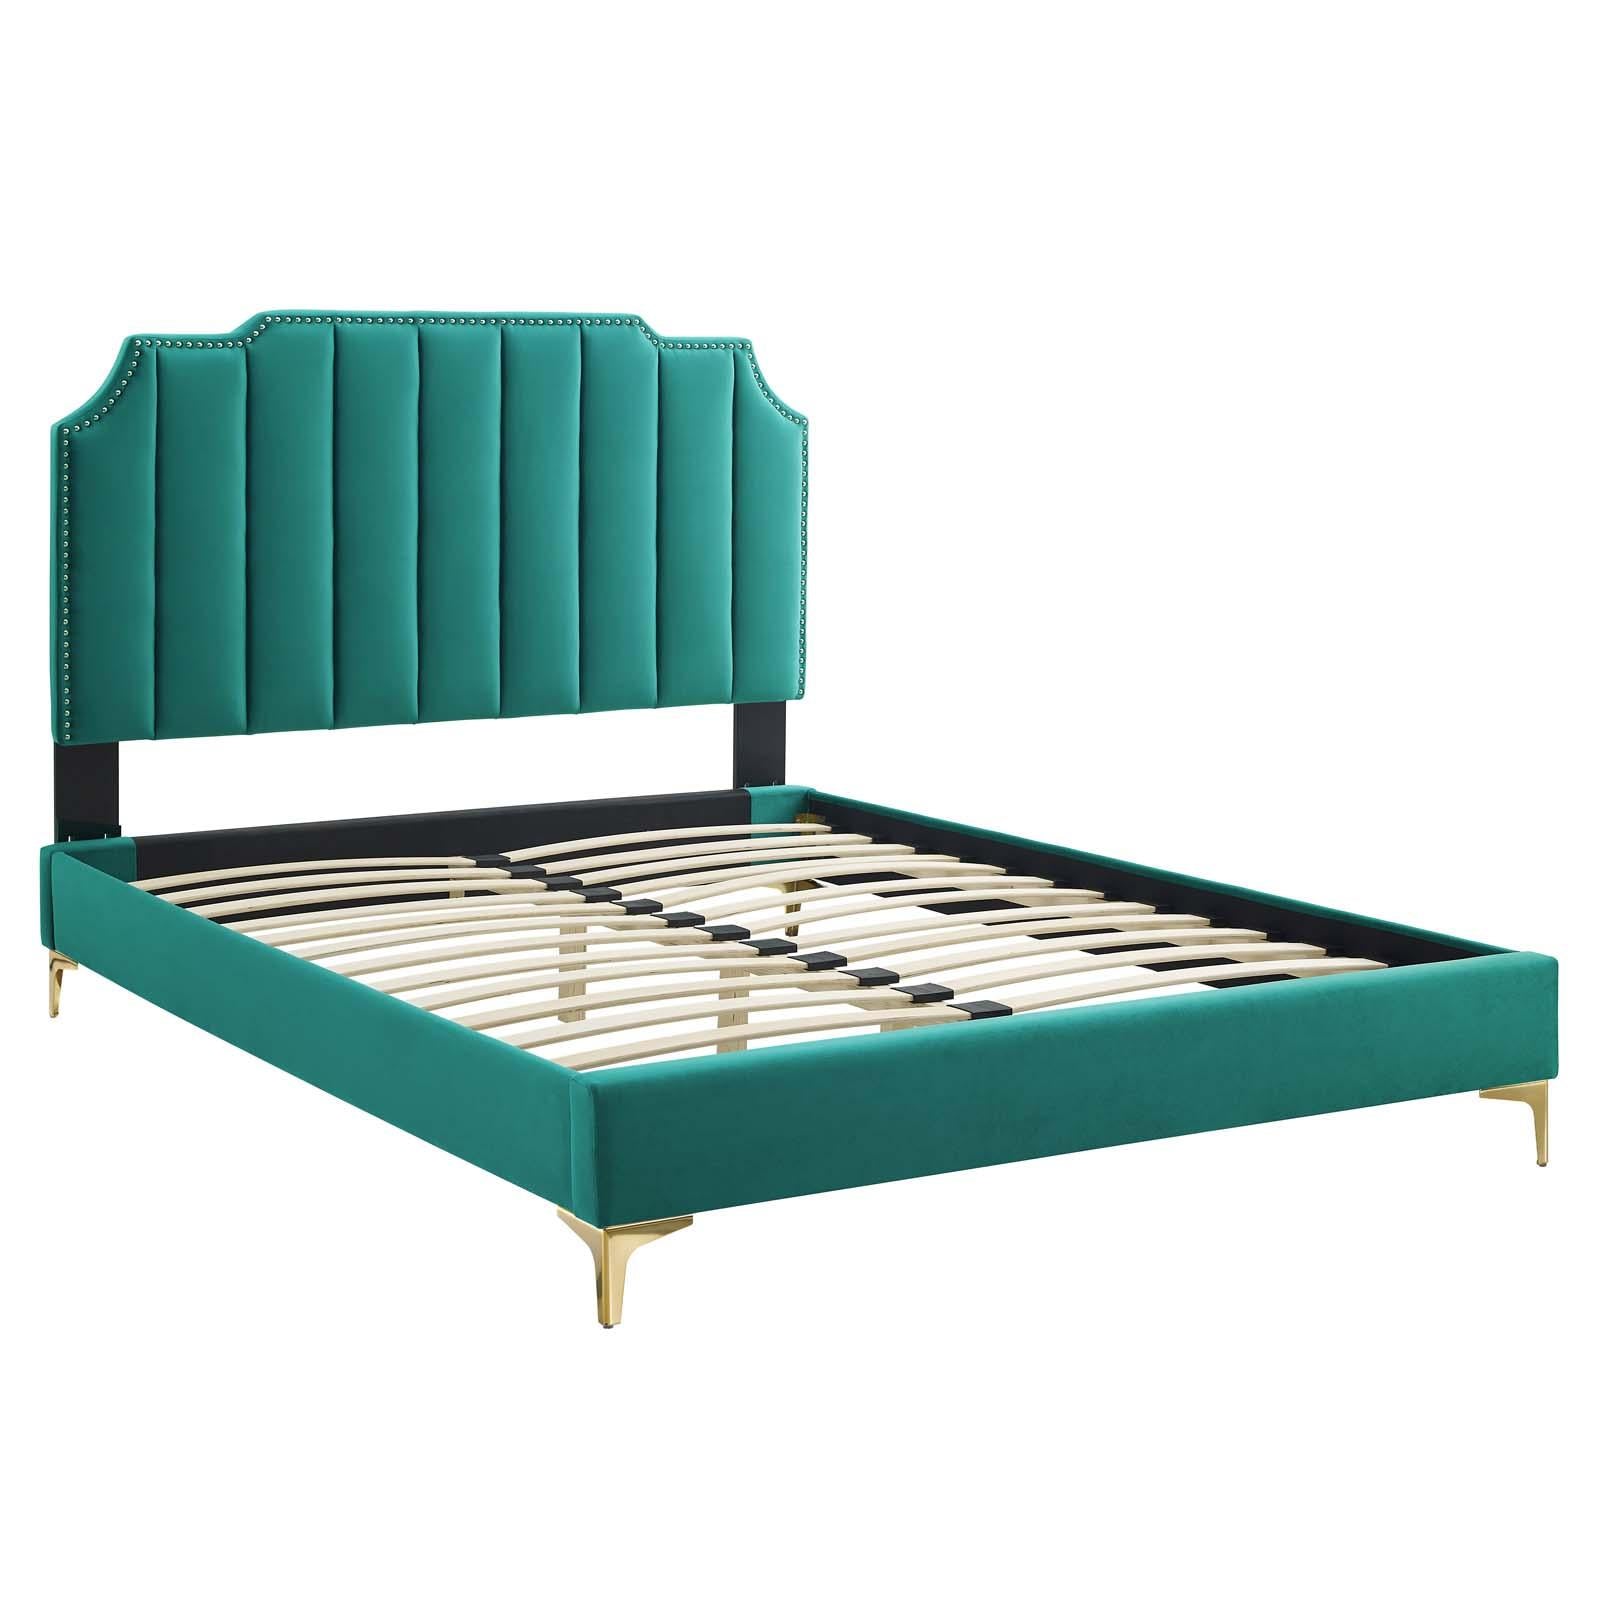 Modway Furniture Modern Colette King Performance Velvet Platform Bed - MOD-6894